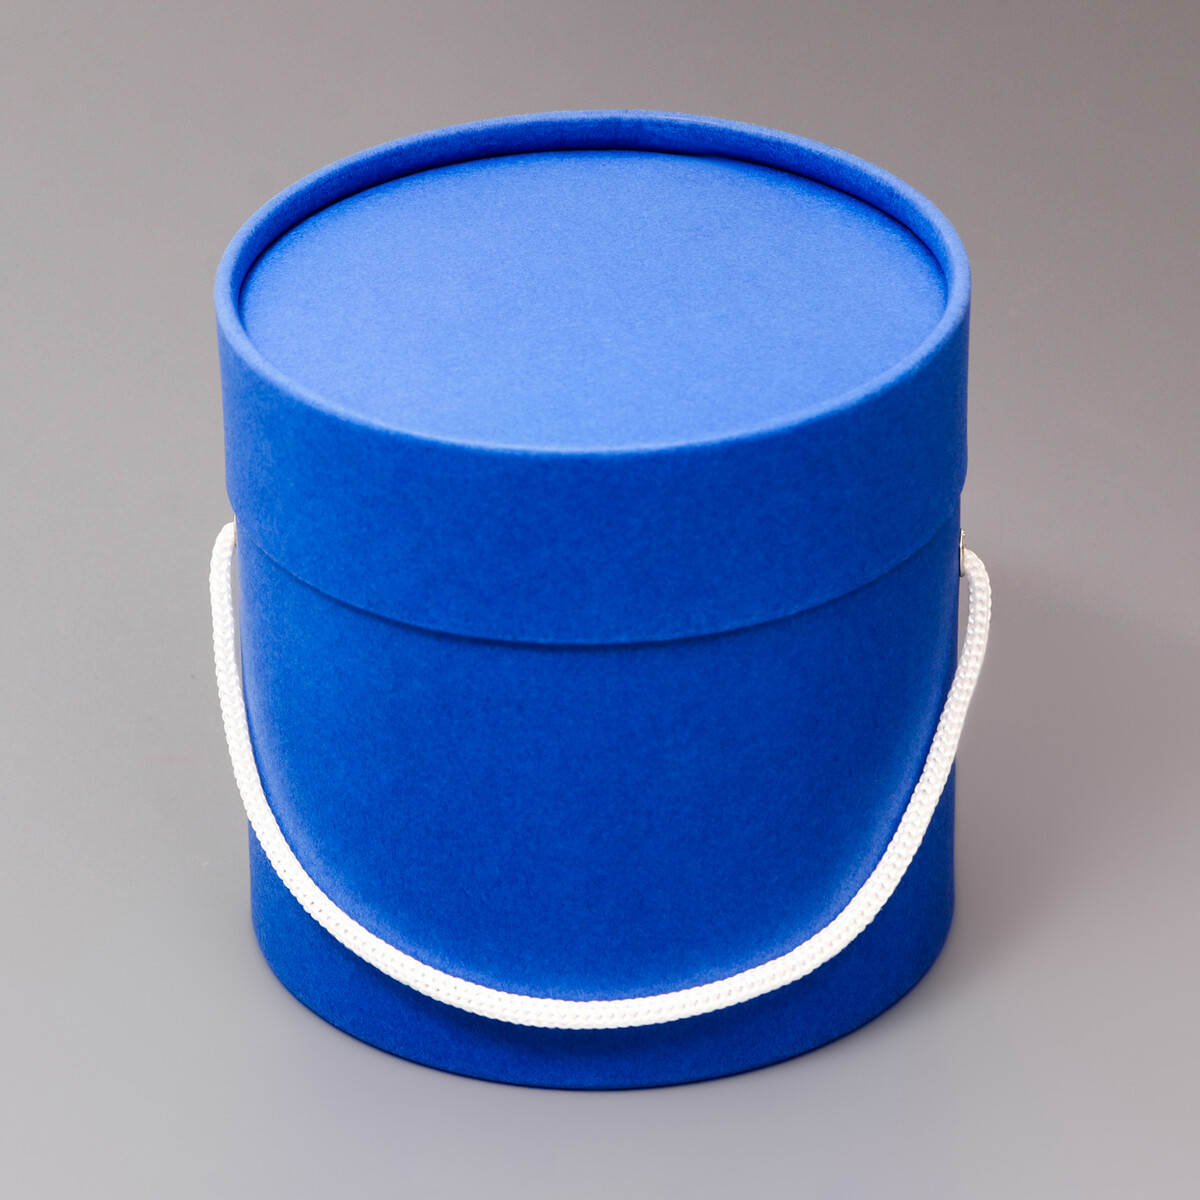 Подарочная коробка, круглая, синяя,с шнурком, 12 х 12 см подарочная коробка круглая белая с шнурком 12 х 12 см